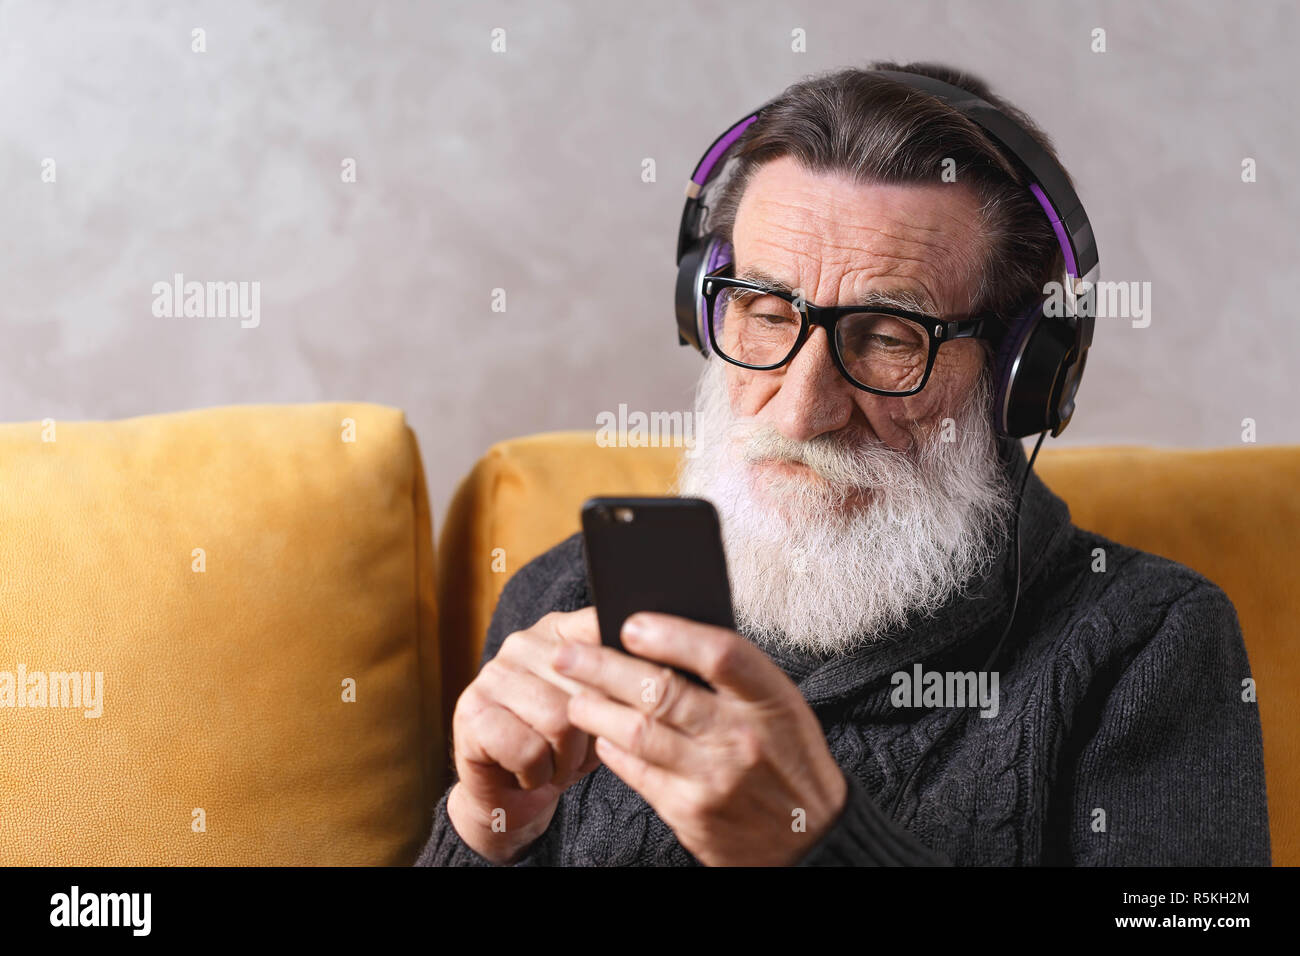 Senior zeitgenössische bärtigen Mann mit Brille grau Pullover writting Nachricht auf dem Smartphone während der Sitzung in der Kopfhörer auf ein gelbes Sofa in seinem Lichte Wohnzimmer, moderne Technologie, Kommunikation Konzept Stockfoto